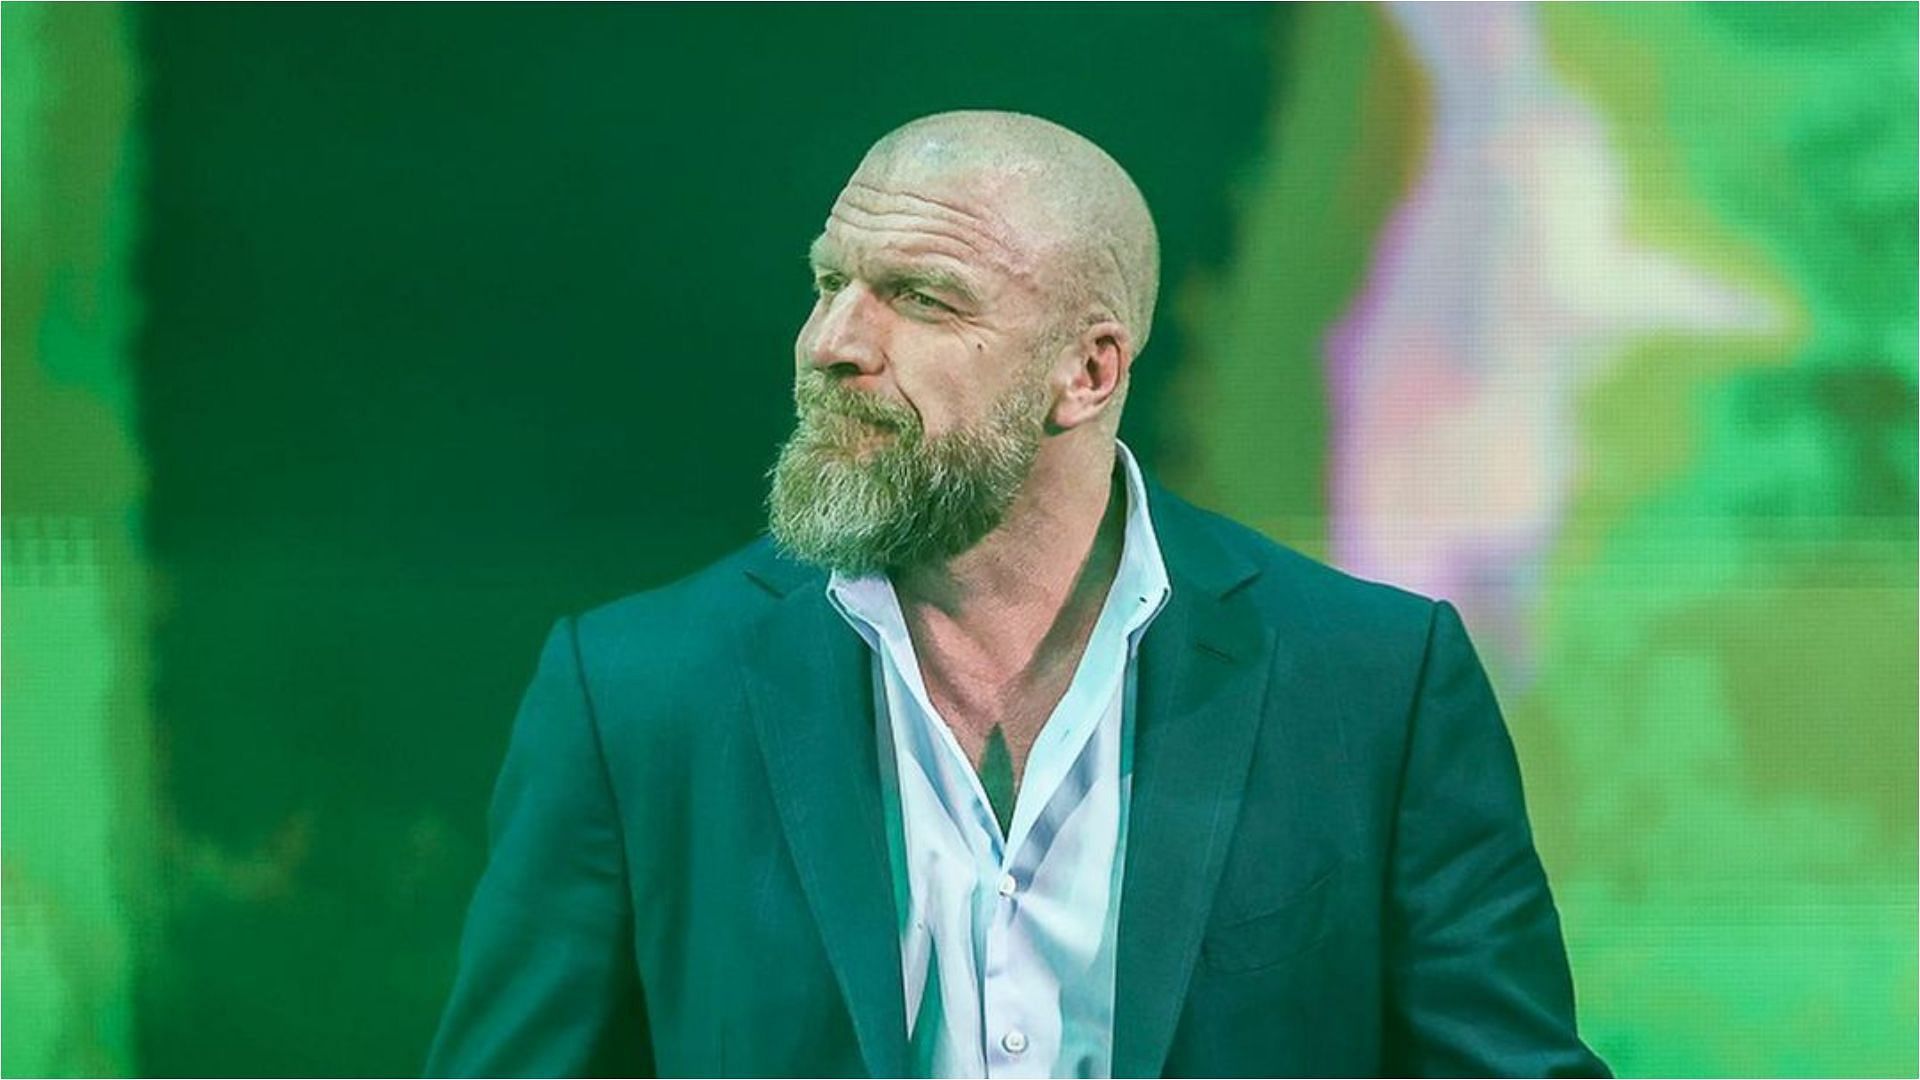 Triple H is the one steering WWE